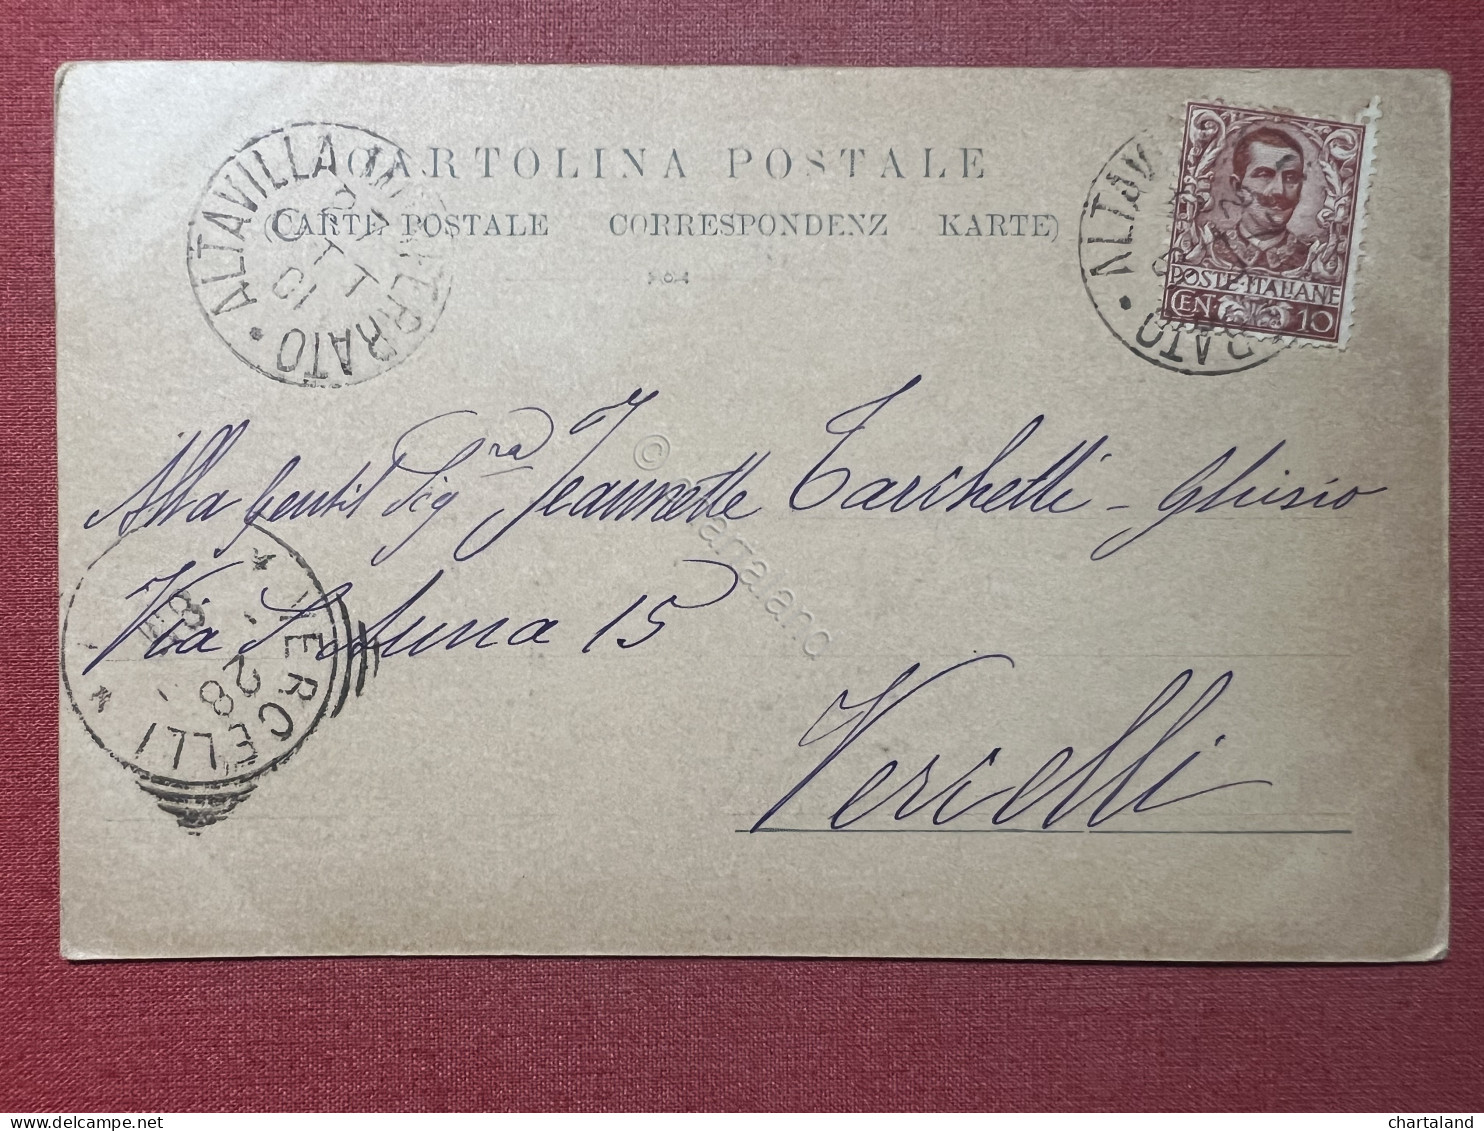 Cartolina Commemorativa - Victorien Sardou - Drammaturgo Francese - 1901 - Unclassified